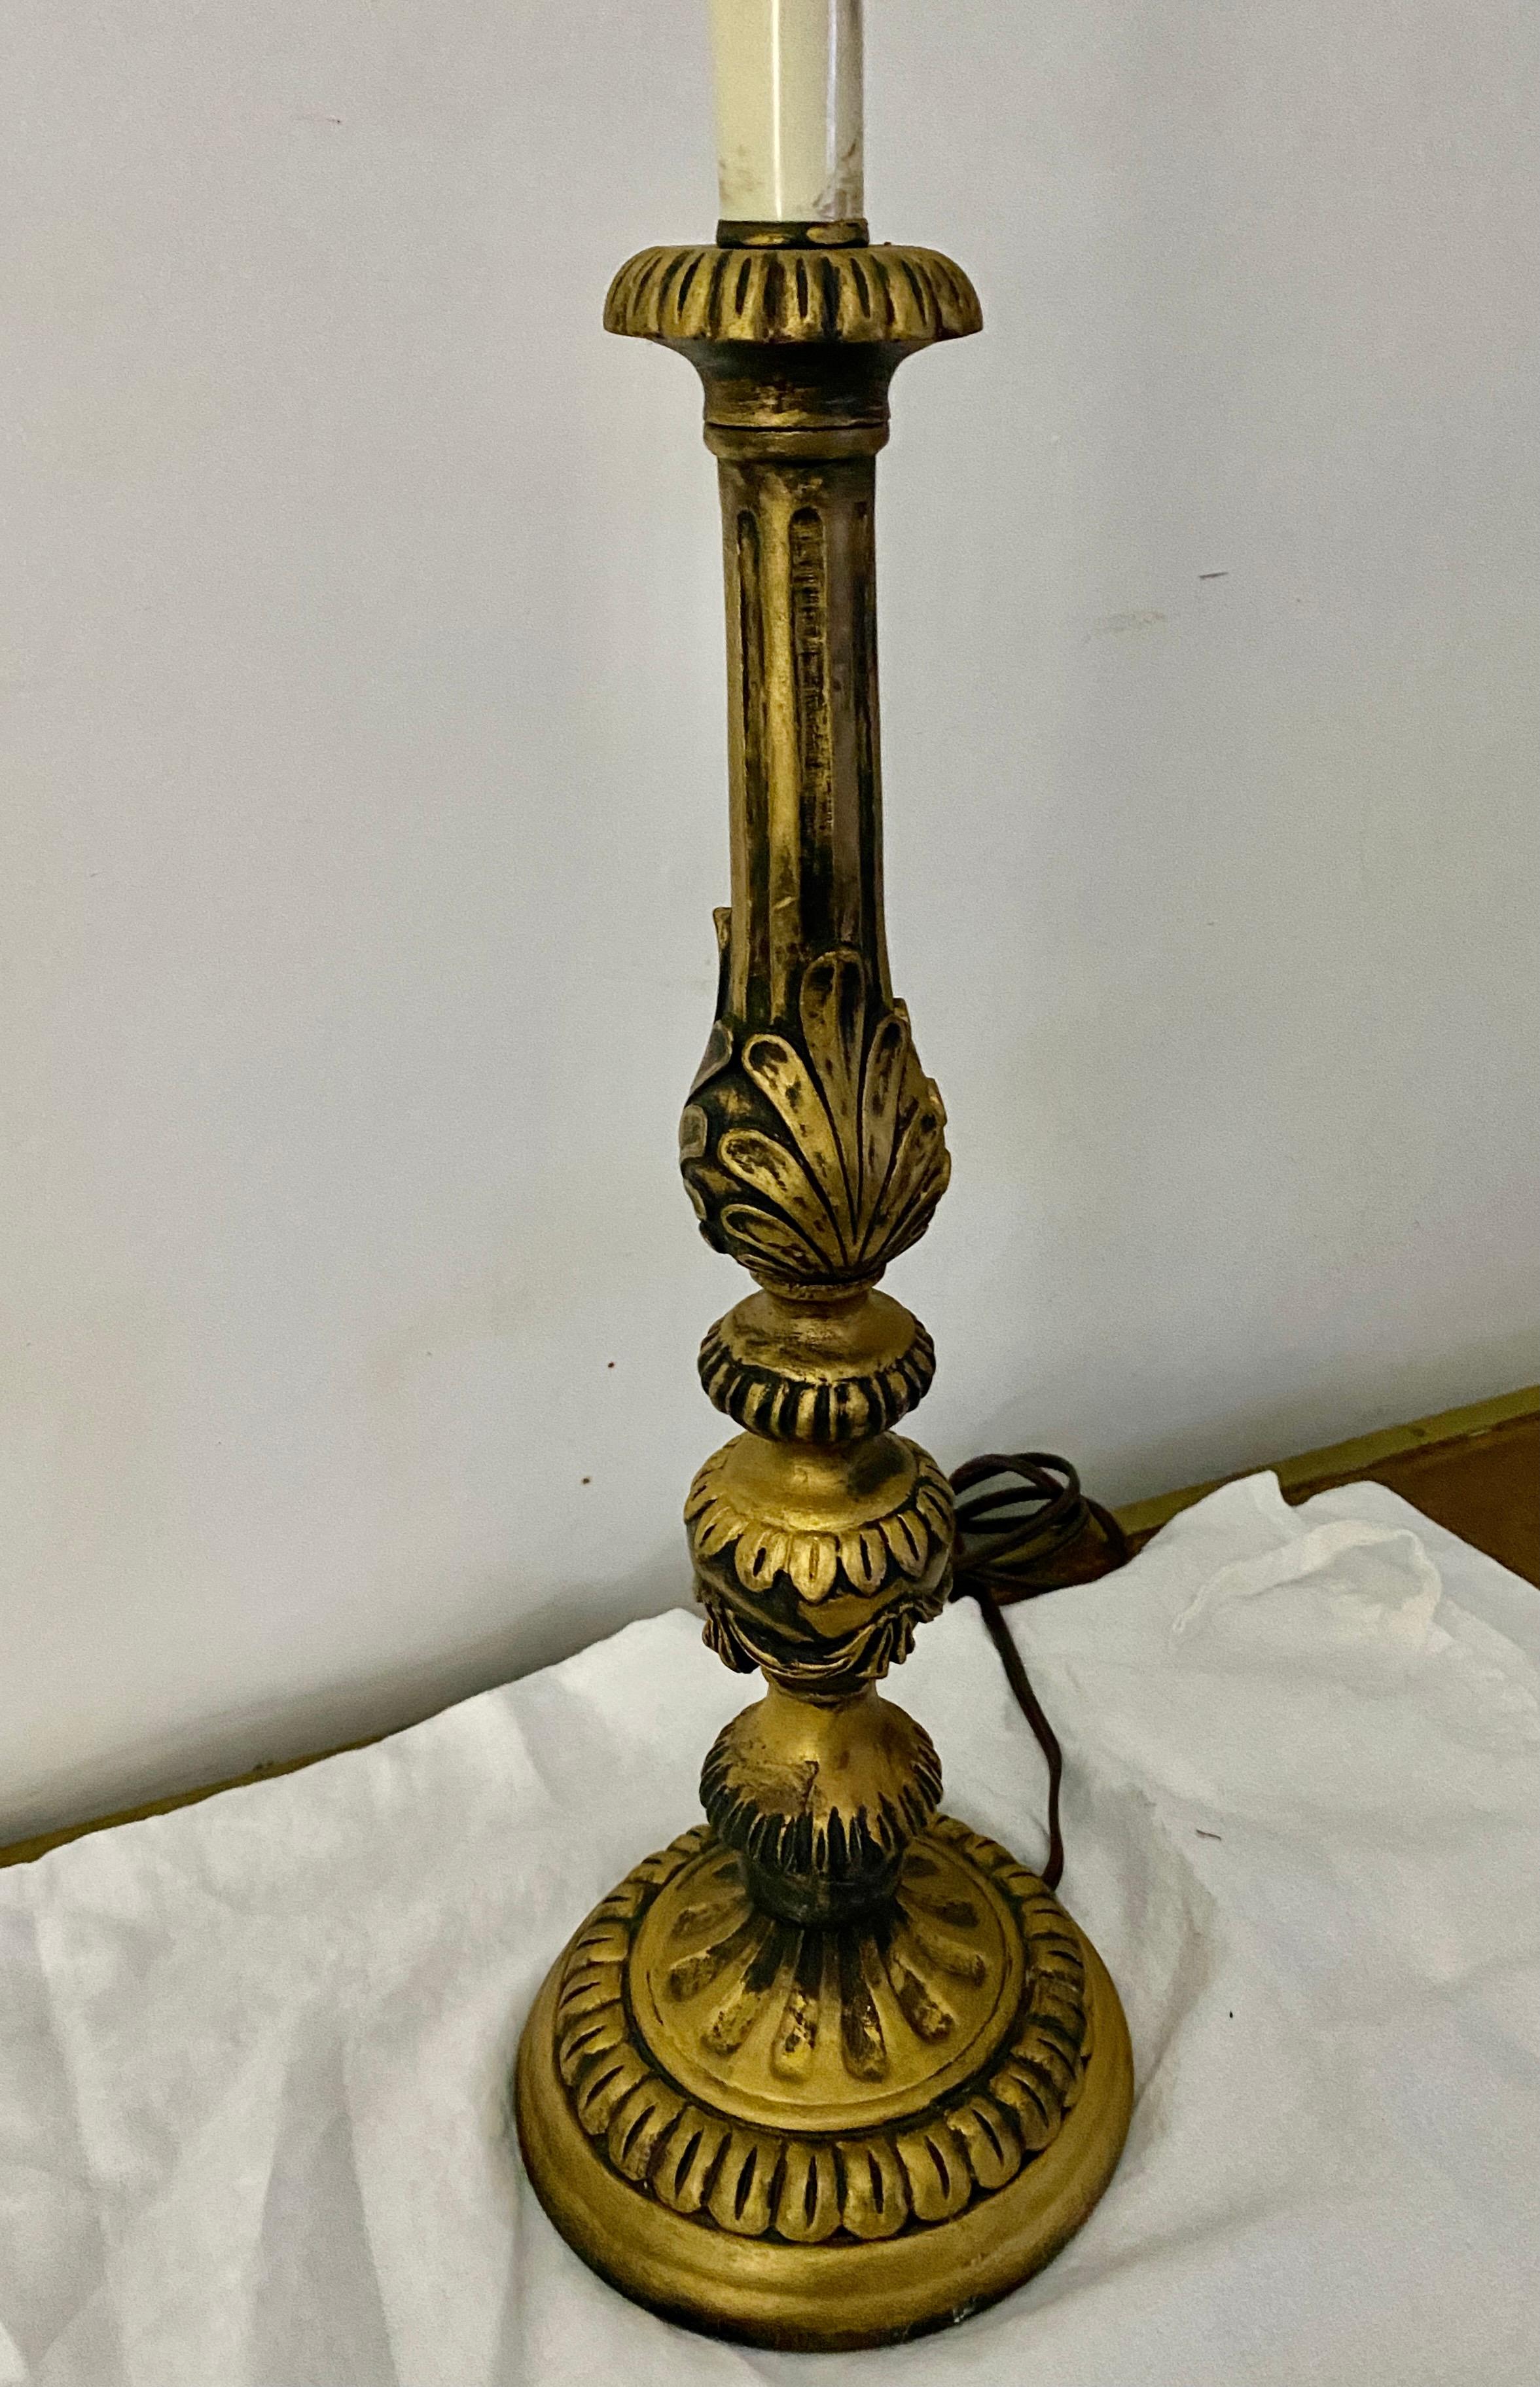 Cette lampe de table en bois doré, de style baroque italien, est un merveilleux ajout dans n'importe quelle pièce.
Terme de recherche : Hollywood Regency, lampe de style rococo.